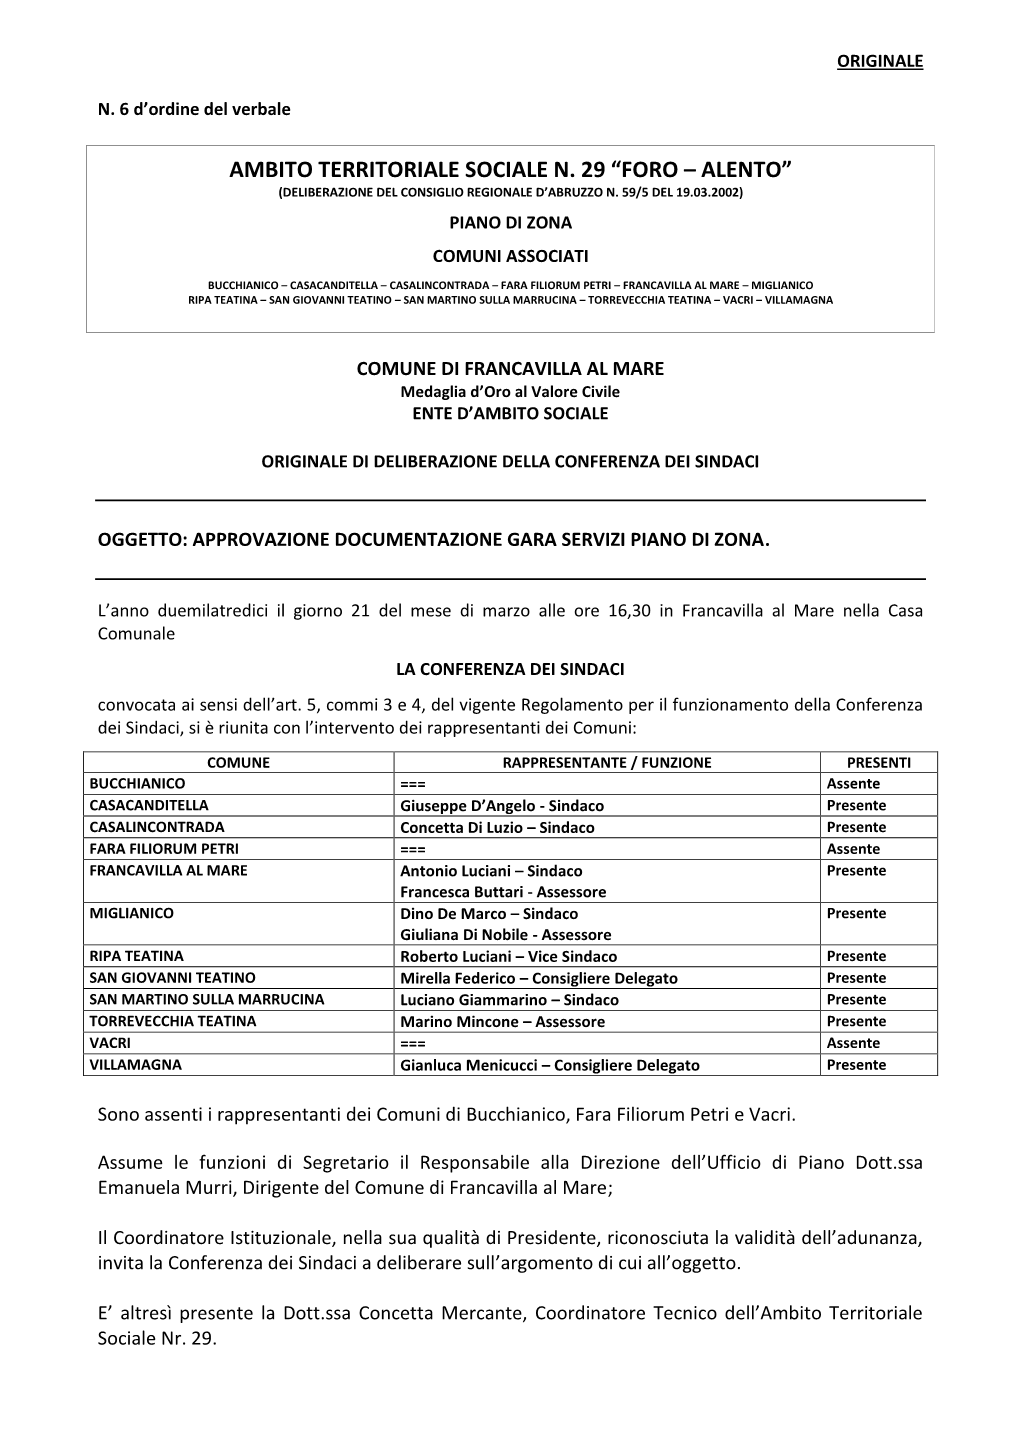 Foro – Alento” (Deliberazione Del Consiglio Regionale D’Abruzzo N